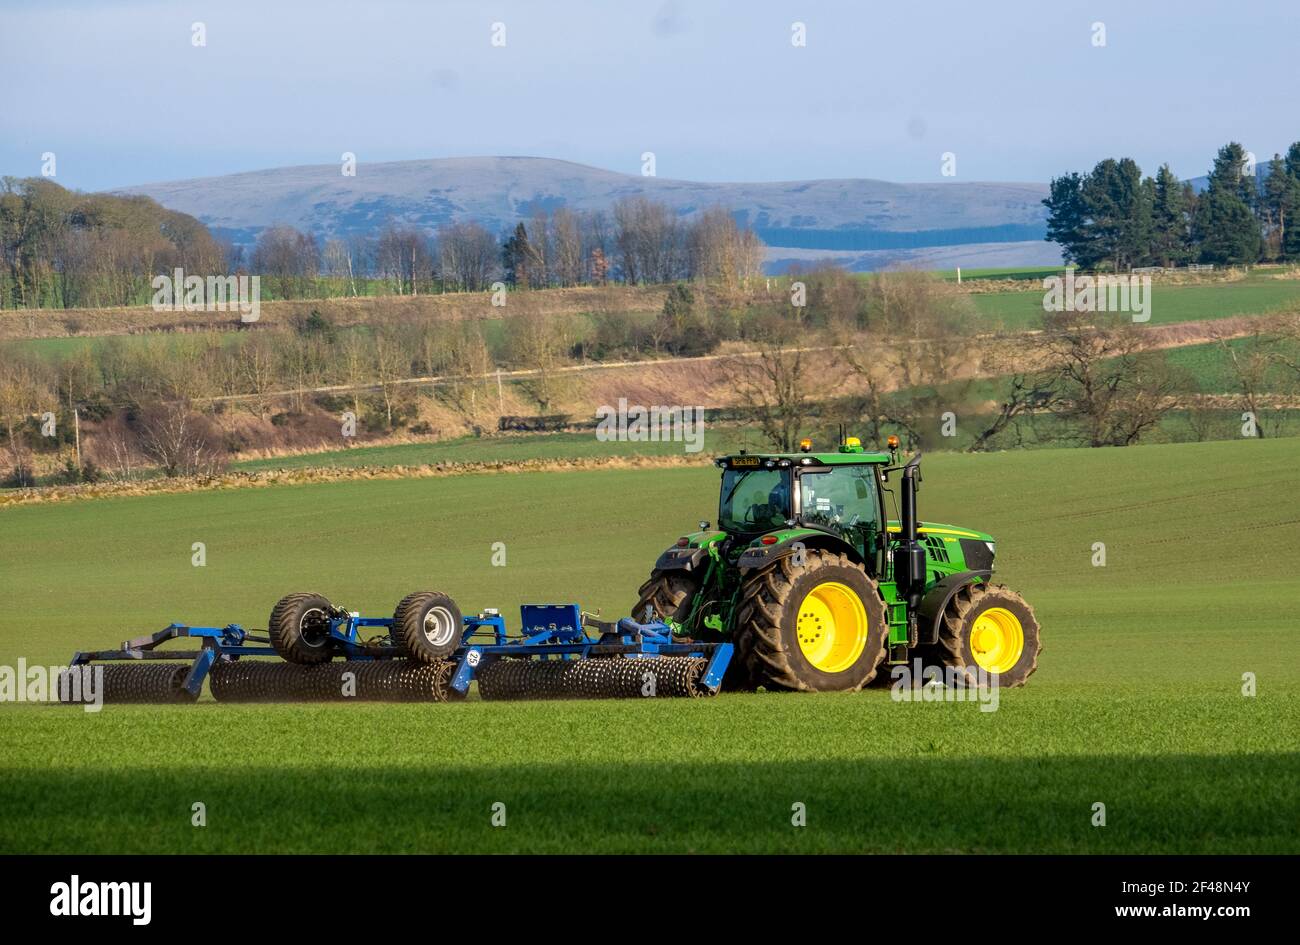 Un tracteur John Deere tire une machine de préparation de récolte sur un champ cultivé, West Lothian, Écosse. Banque D'Images